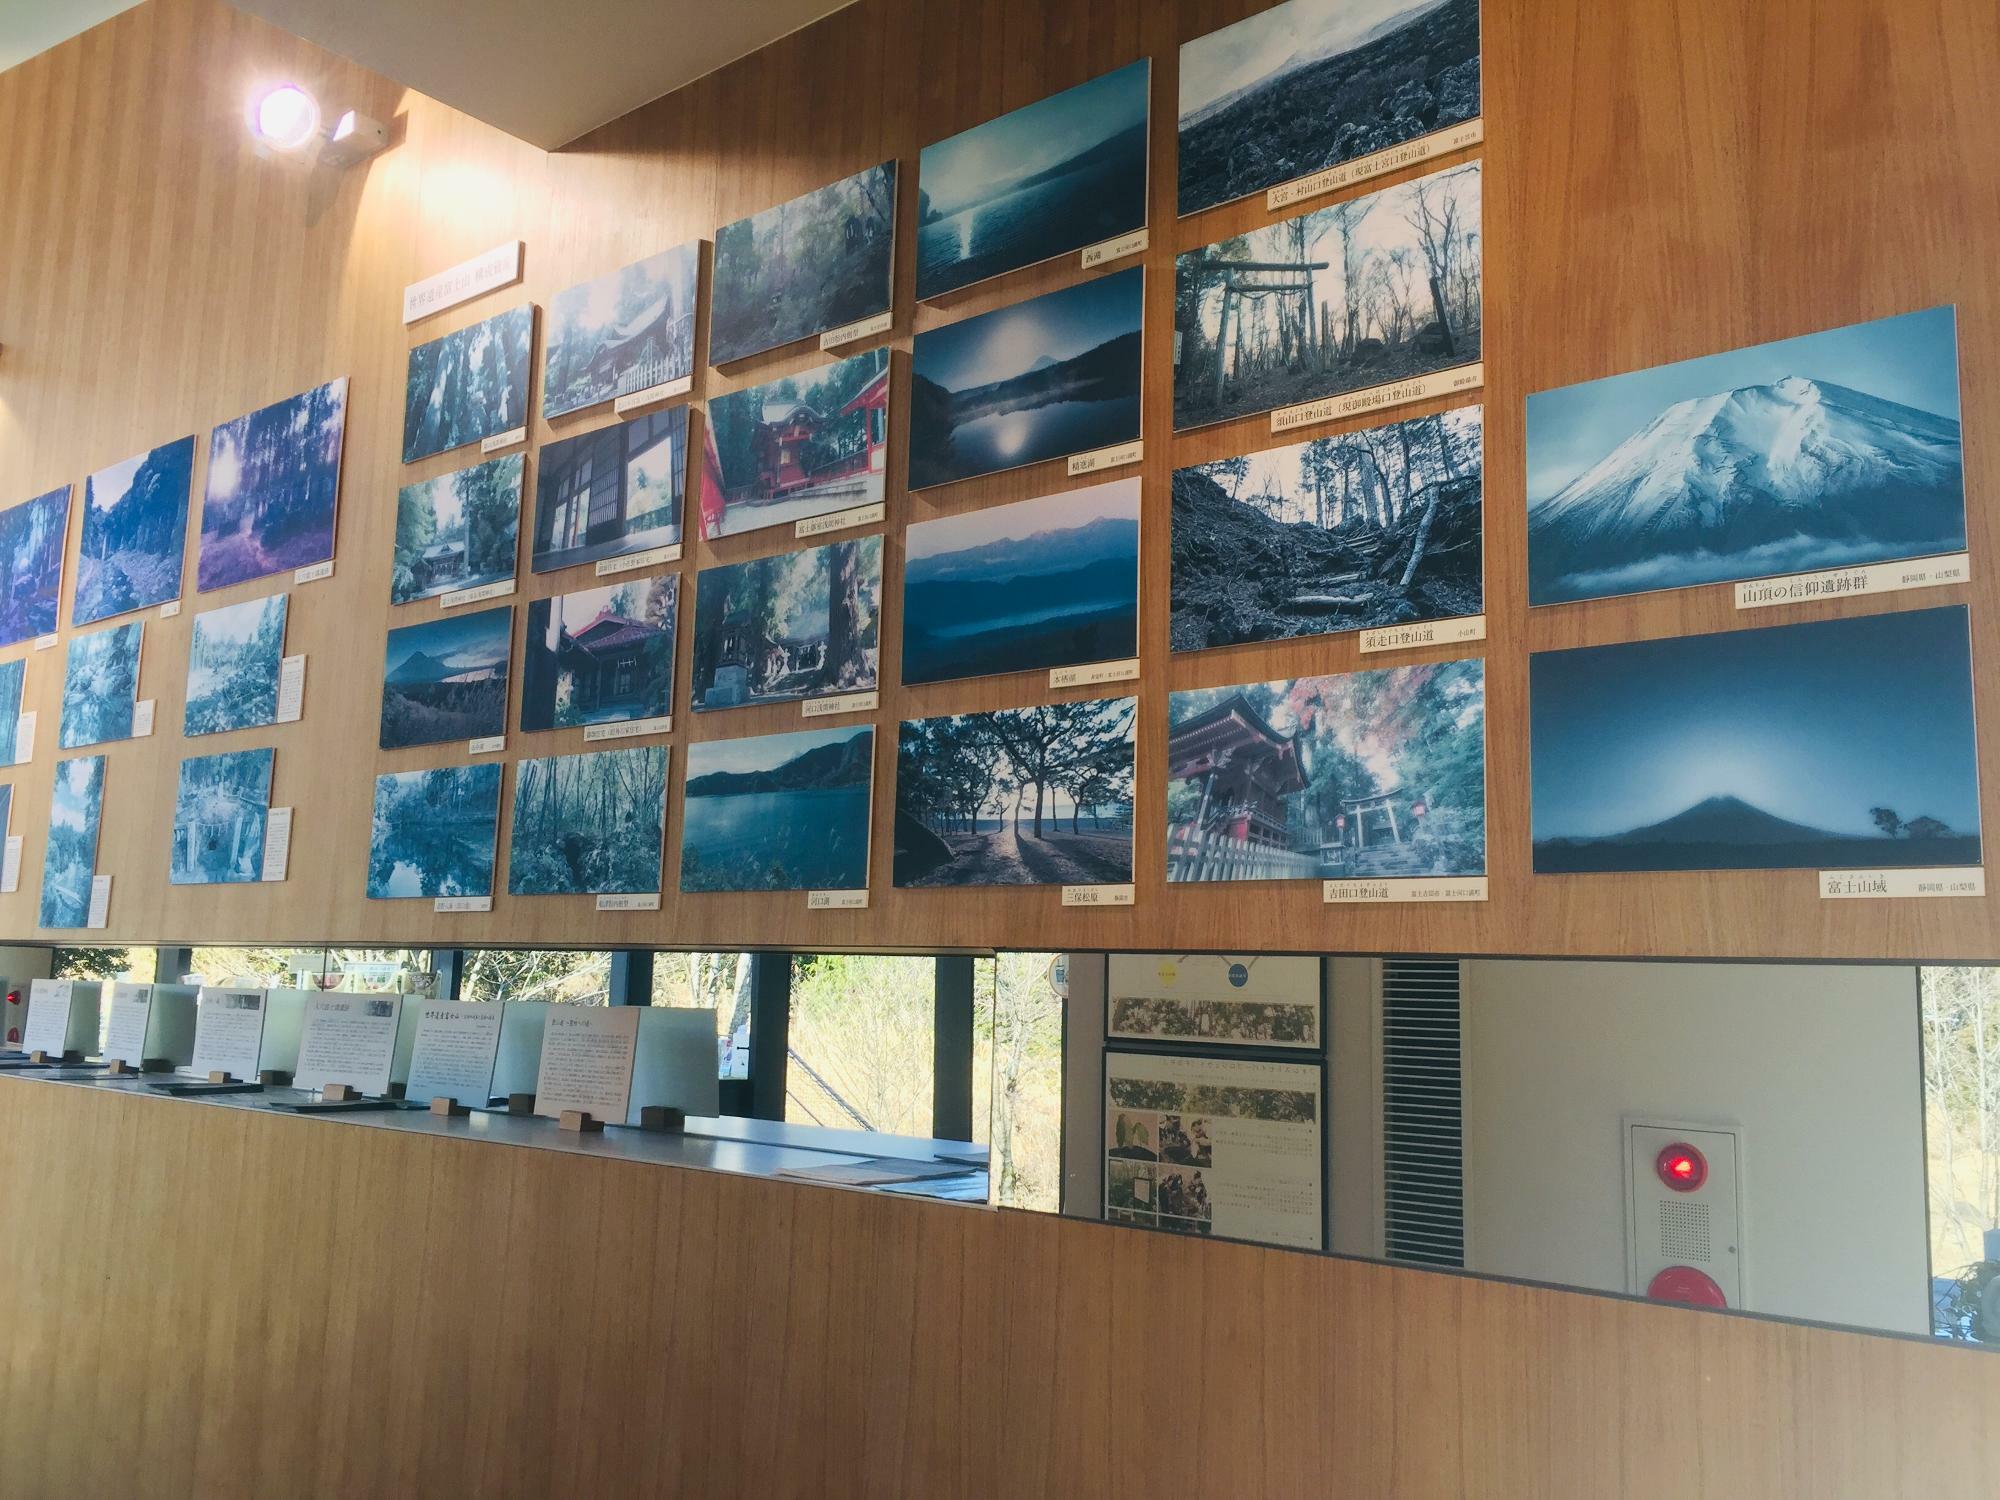 富士山構成資産である神社などの説明や写真、パンフレットなどがあります。